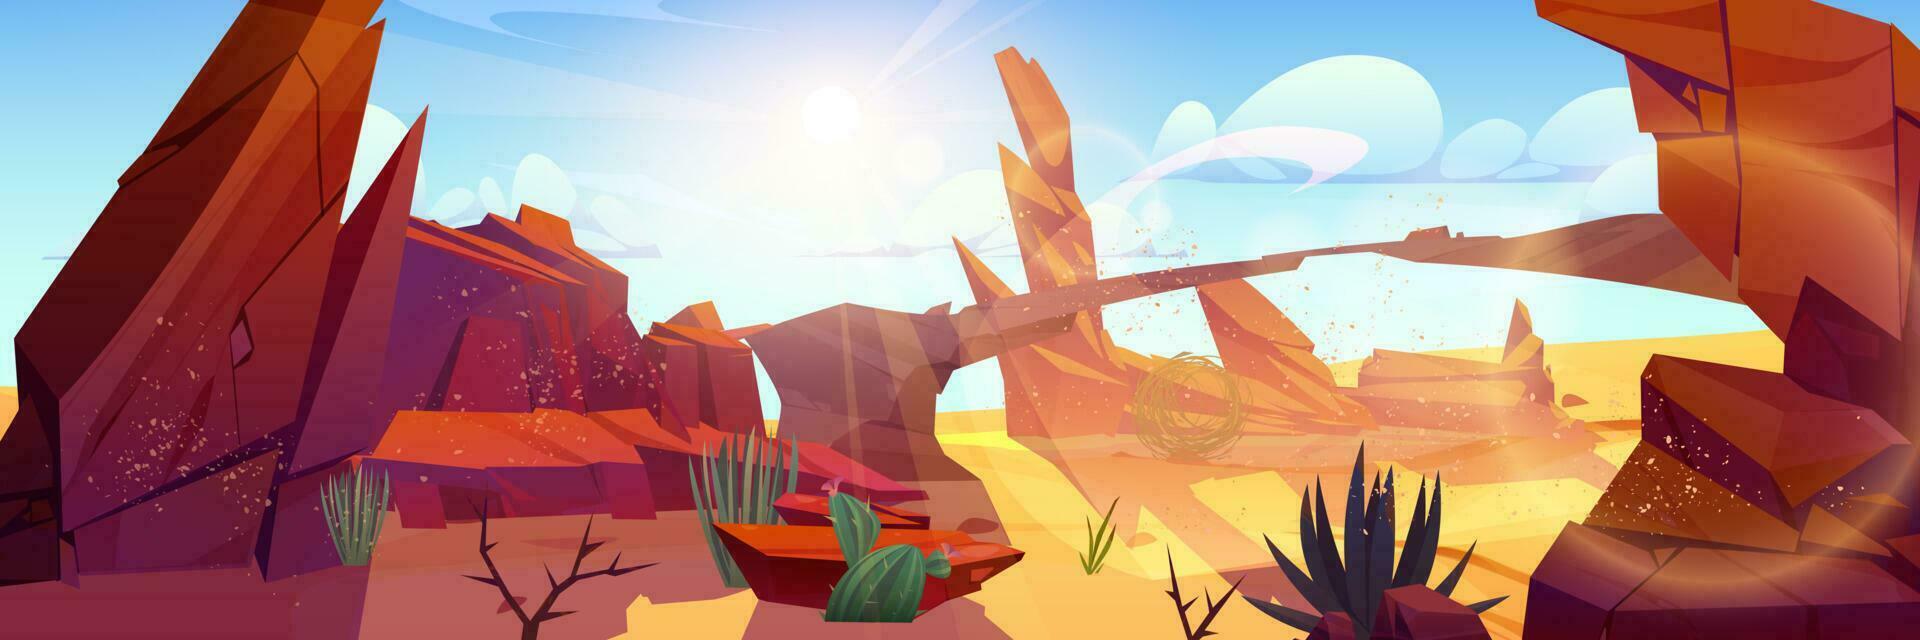 sten och kanjon i öken- spel tecknad serie landskap vektor